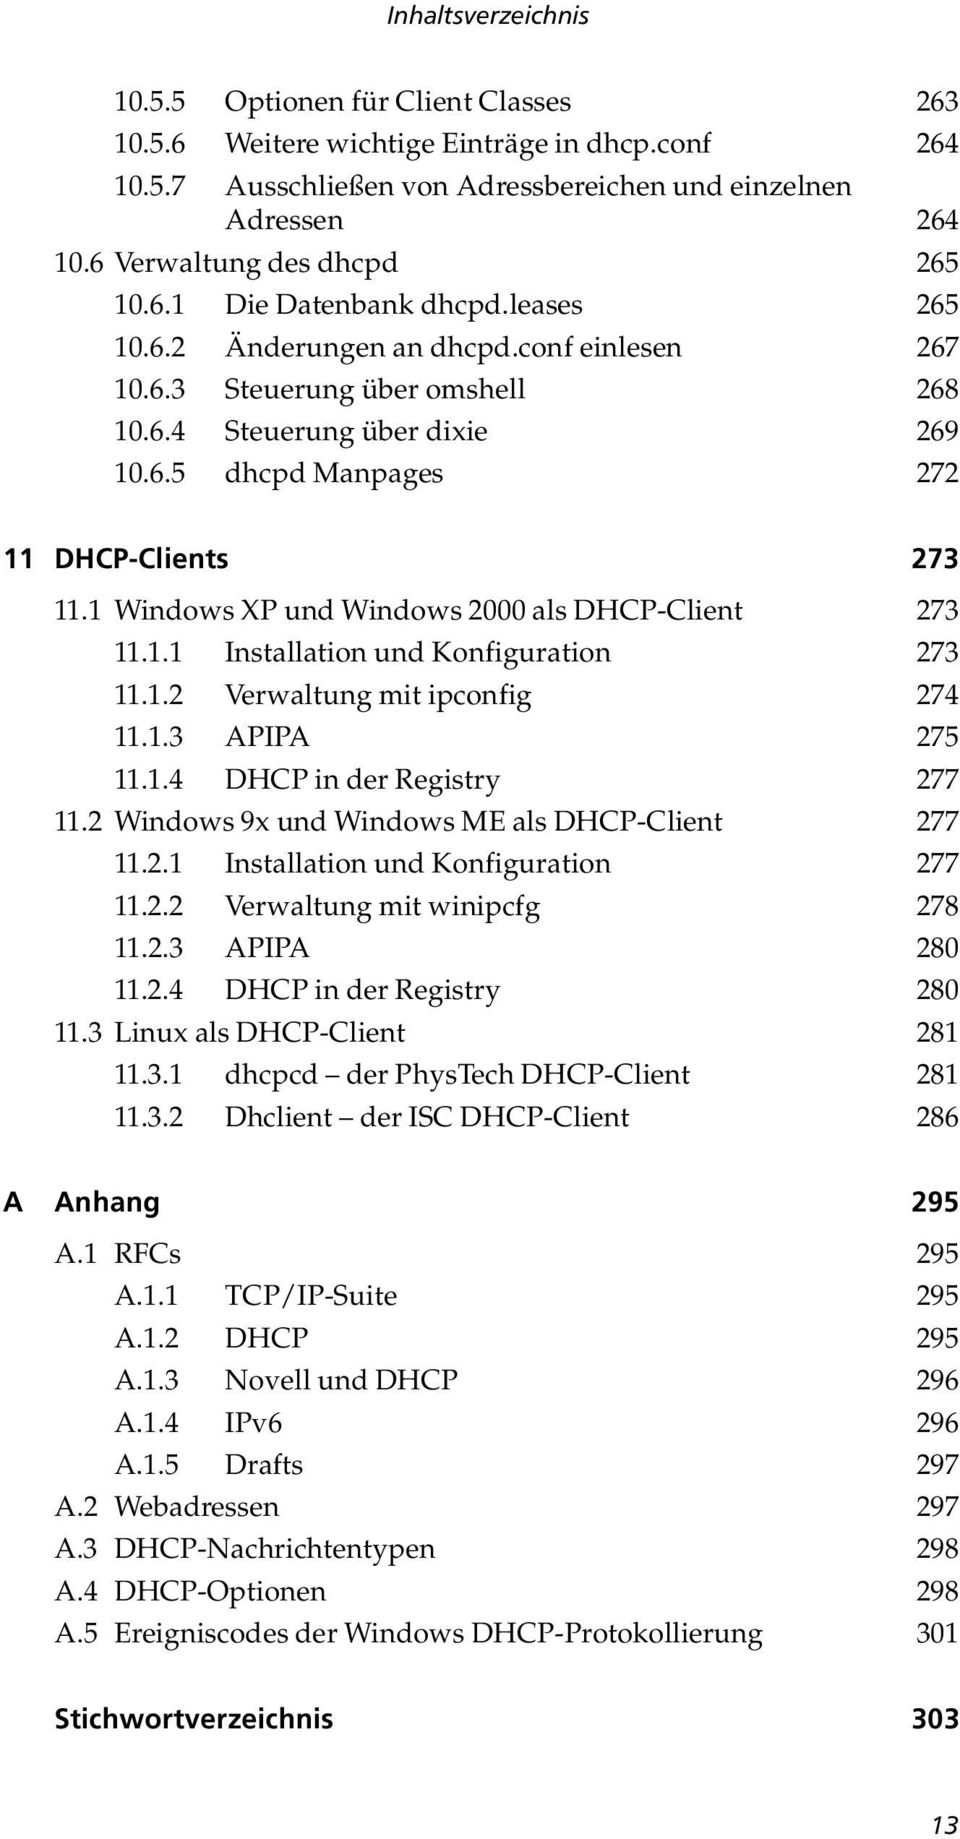 1 Windows XP und Windows 2000 als DHCP-Client 273 11.1.1 Installation und Konfiguration 273 11.1.2 Verwaltung mit ipconfig 274 11.1.3 APIPA 275 11.1.4 DHCP in der Registry 277 11.